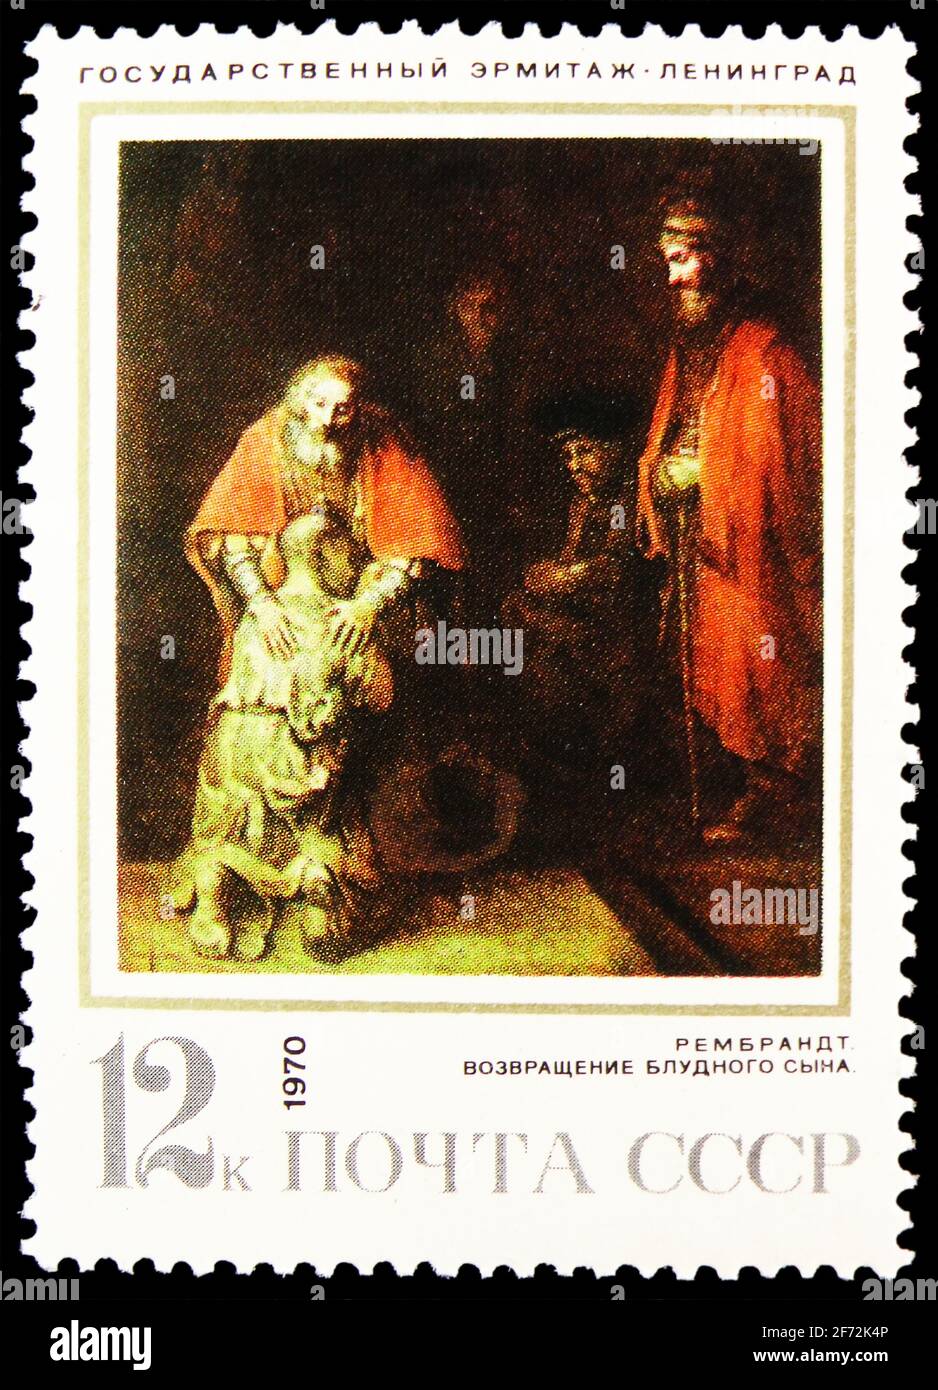 MOSKAU, RUSSLAND - 22. DEZEMBER 2020: Die in der Sowjetunion gedruckte Briefmarke zeigt die Rückkehr des verlorenen Sohnes, Rembrandt (1669), ausländische Gemälde in Sov Stockfoto